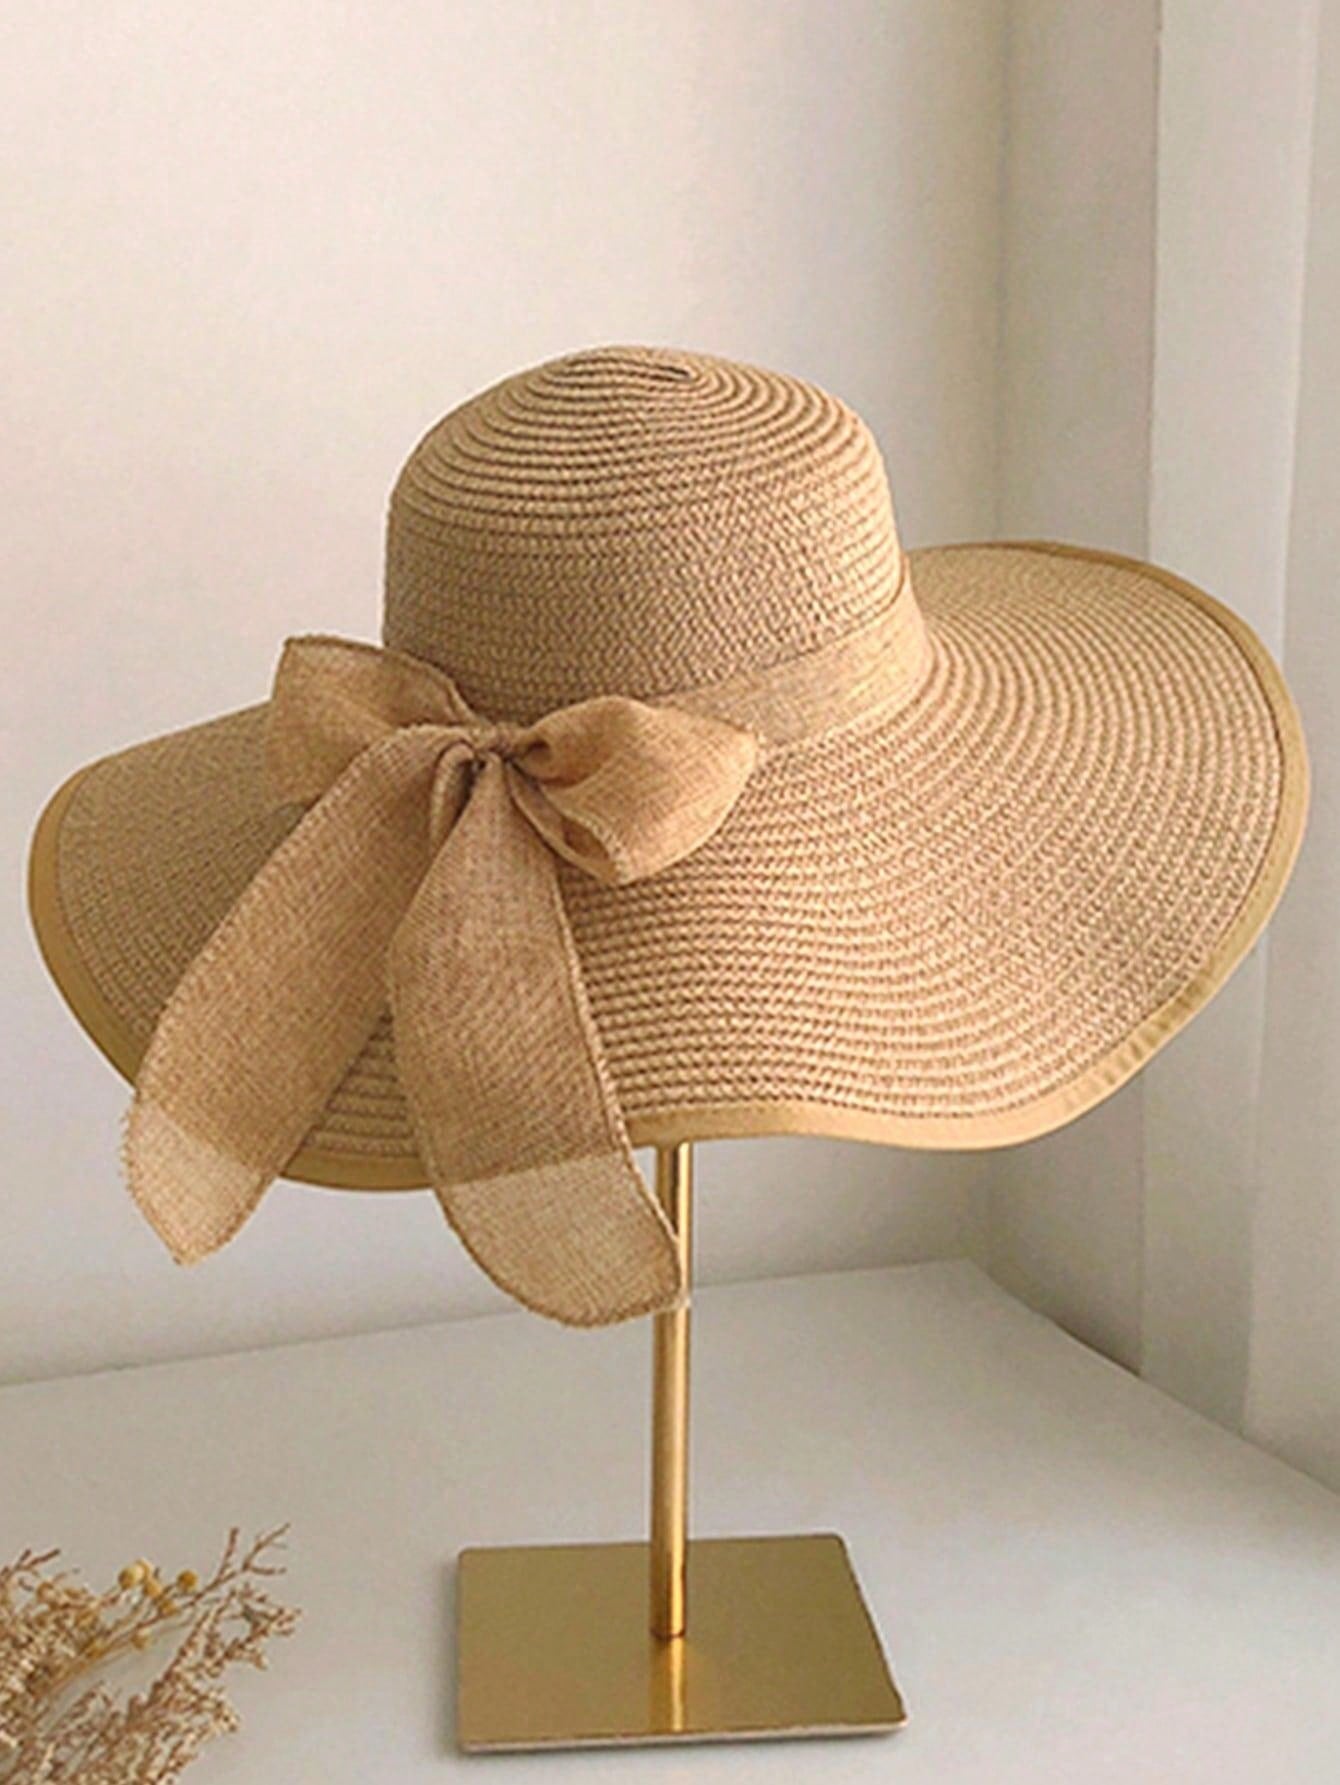 Summer Wide Brim Straw Hat